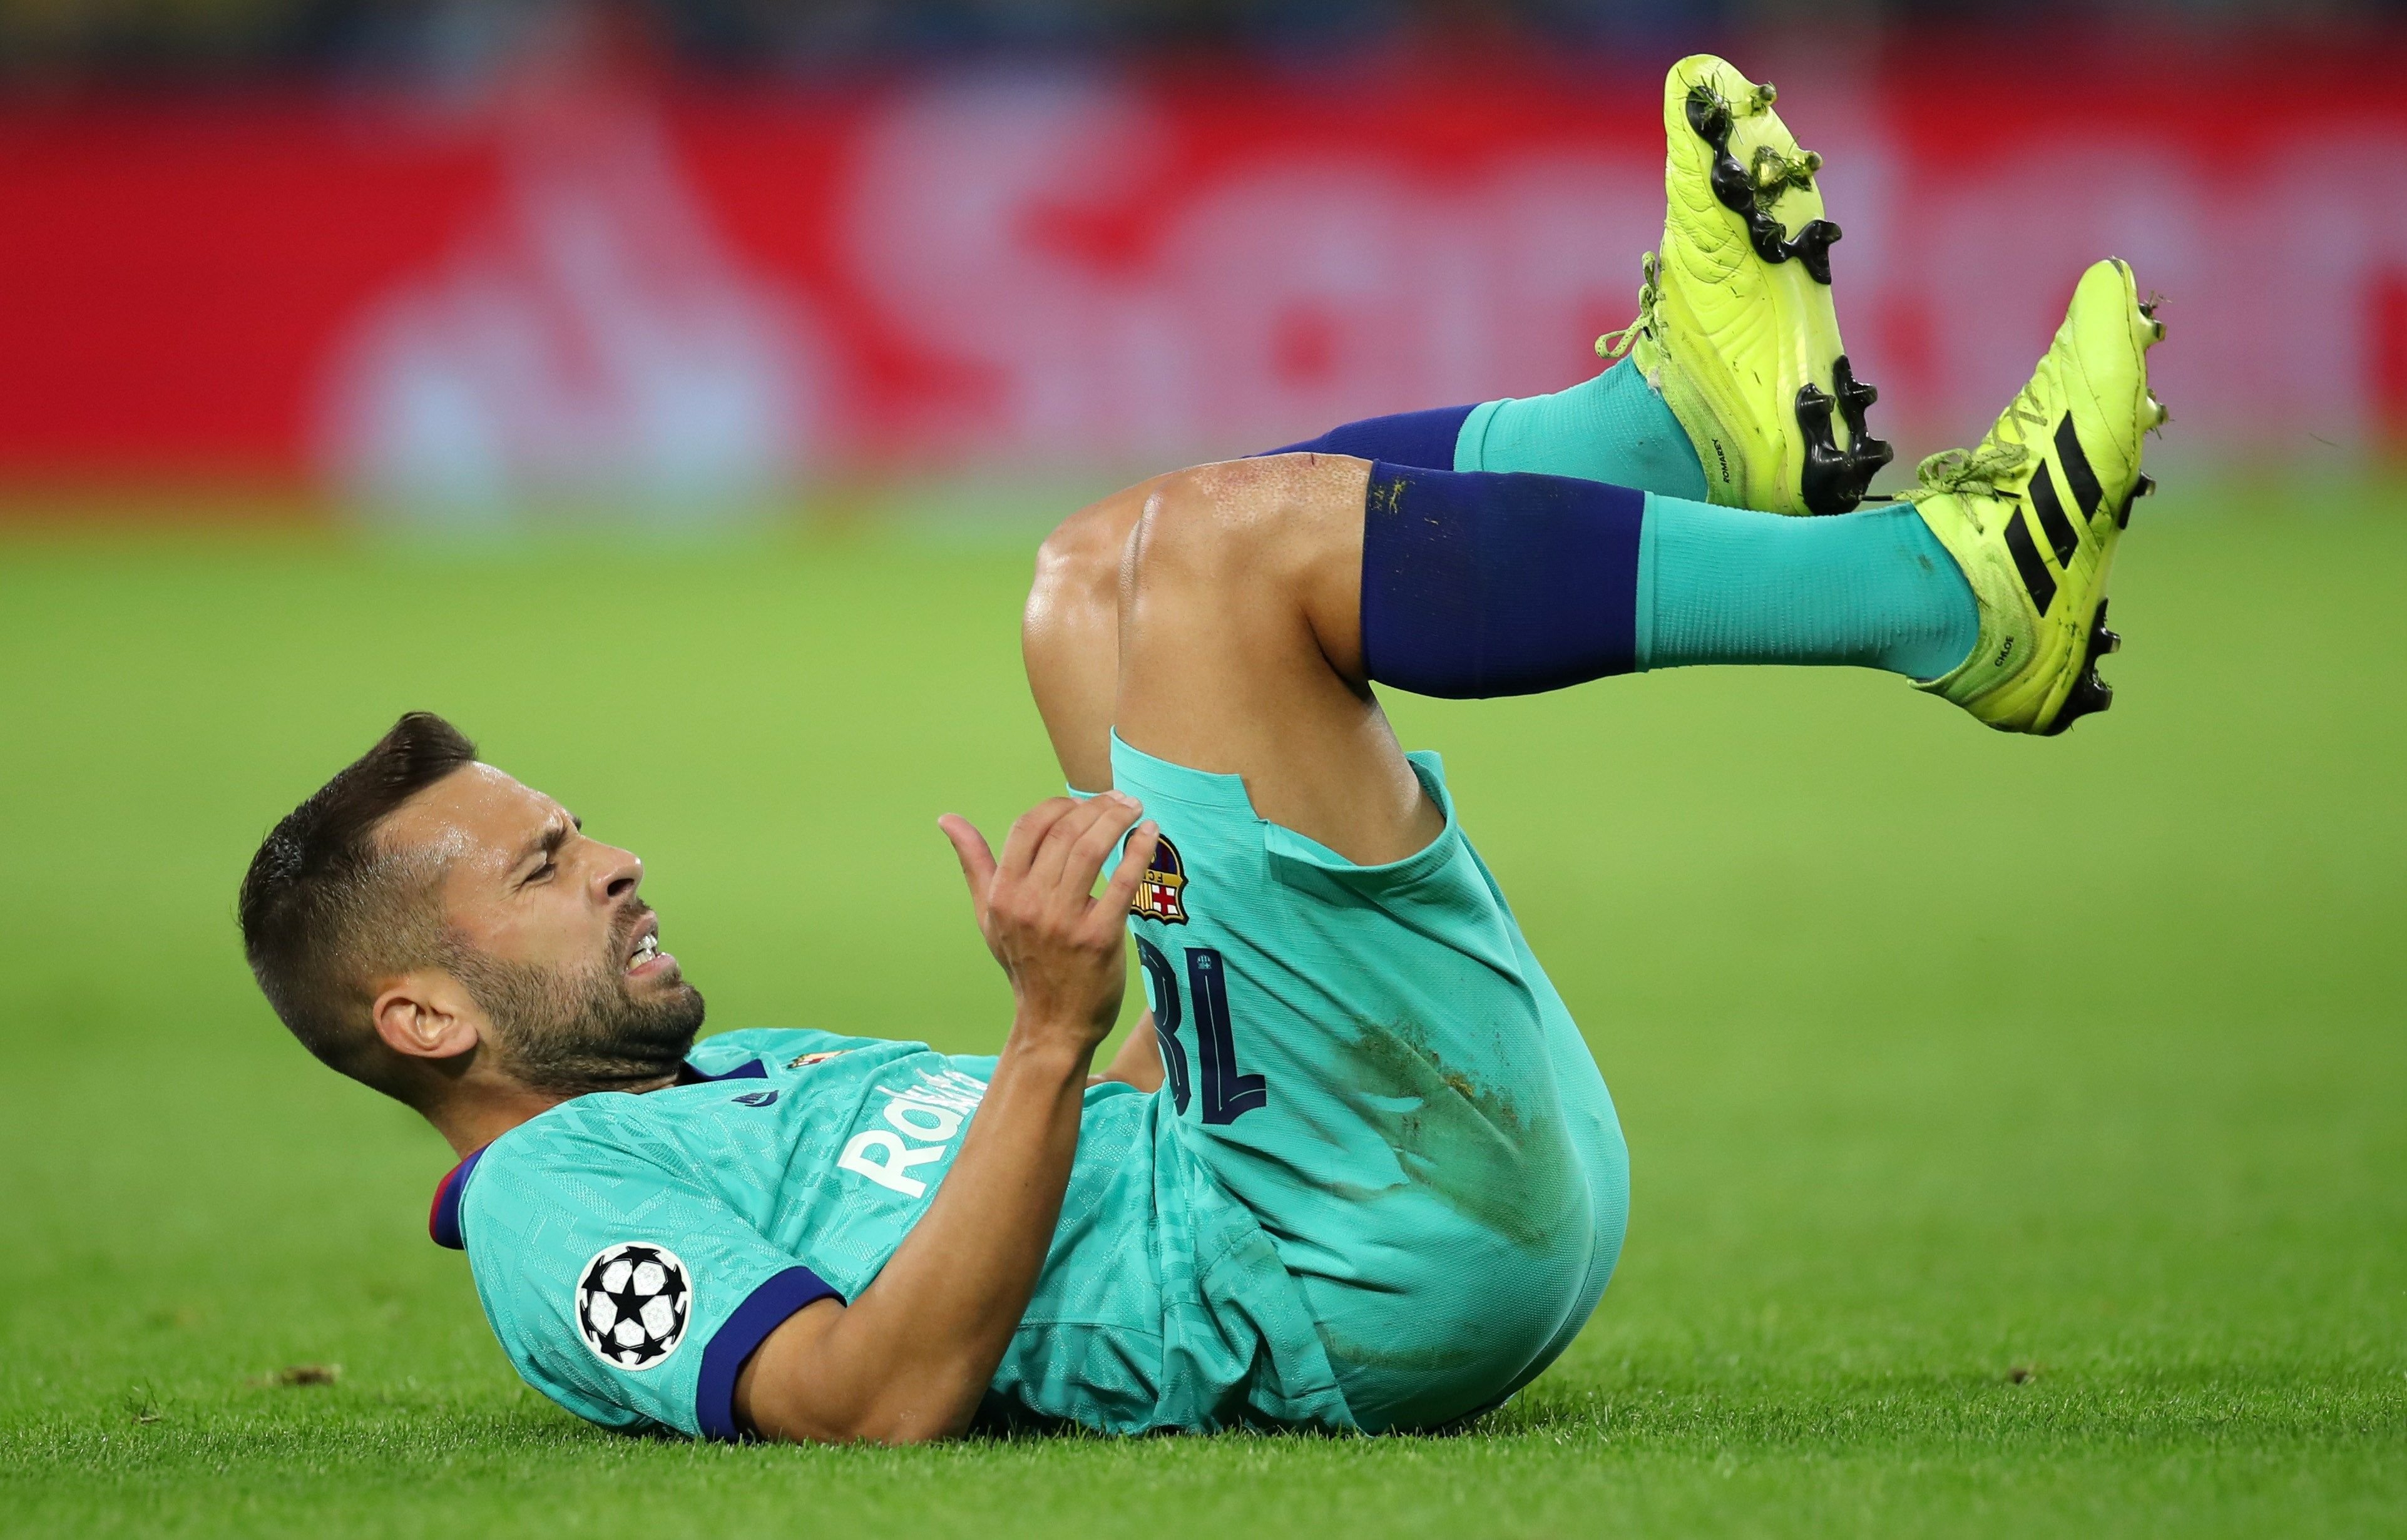 El Barça confirma la lesión muscular de Jordi Alba